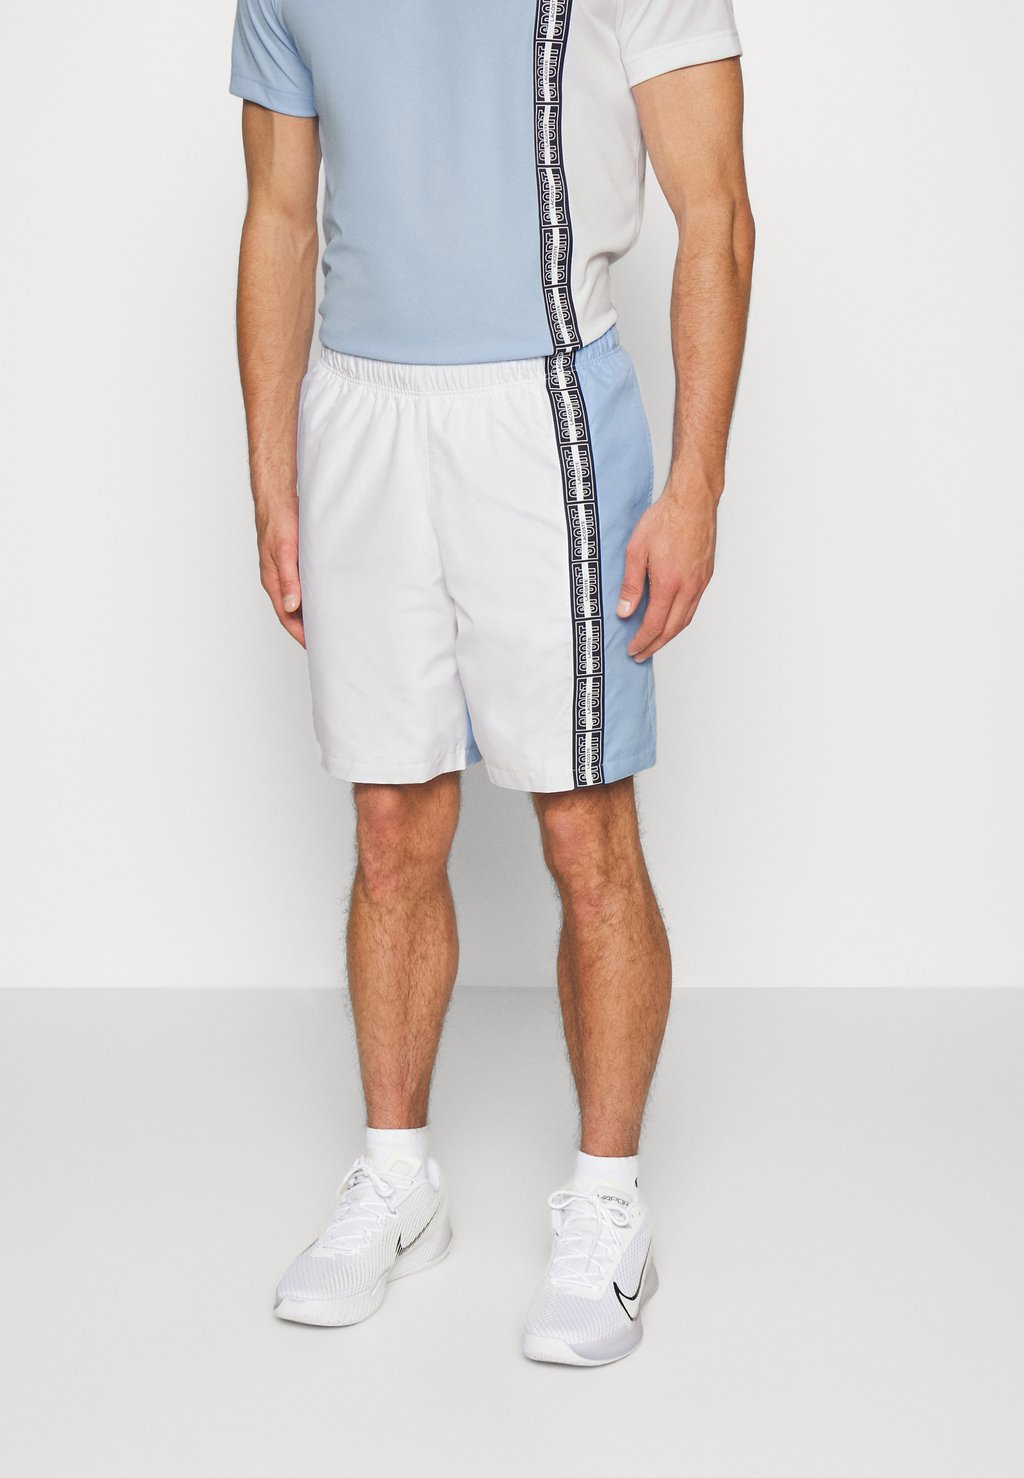 Спортивные шорты Tennis Lacoste, цвет white/navy blue спортивные шорты shorts tc lacoste цвет phoenix blue navy blue